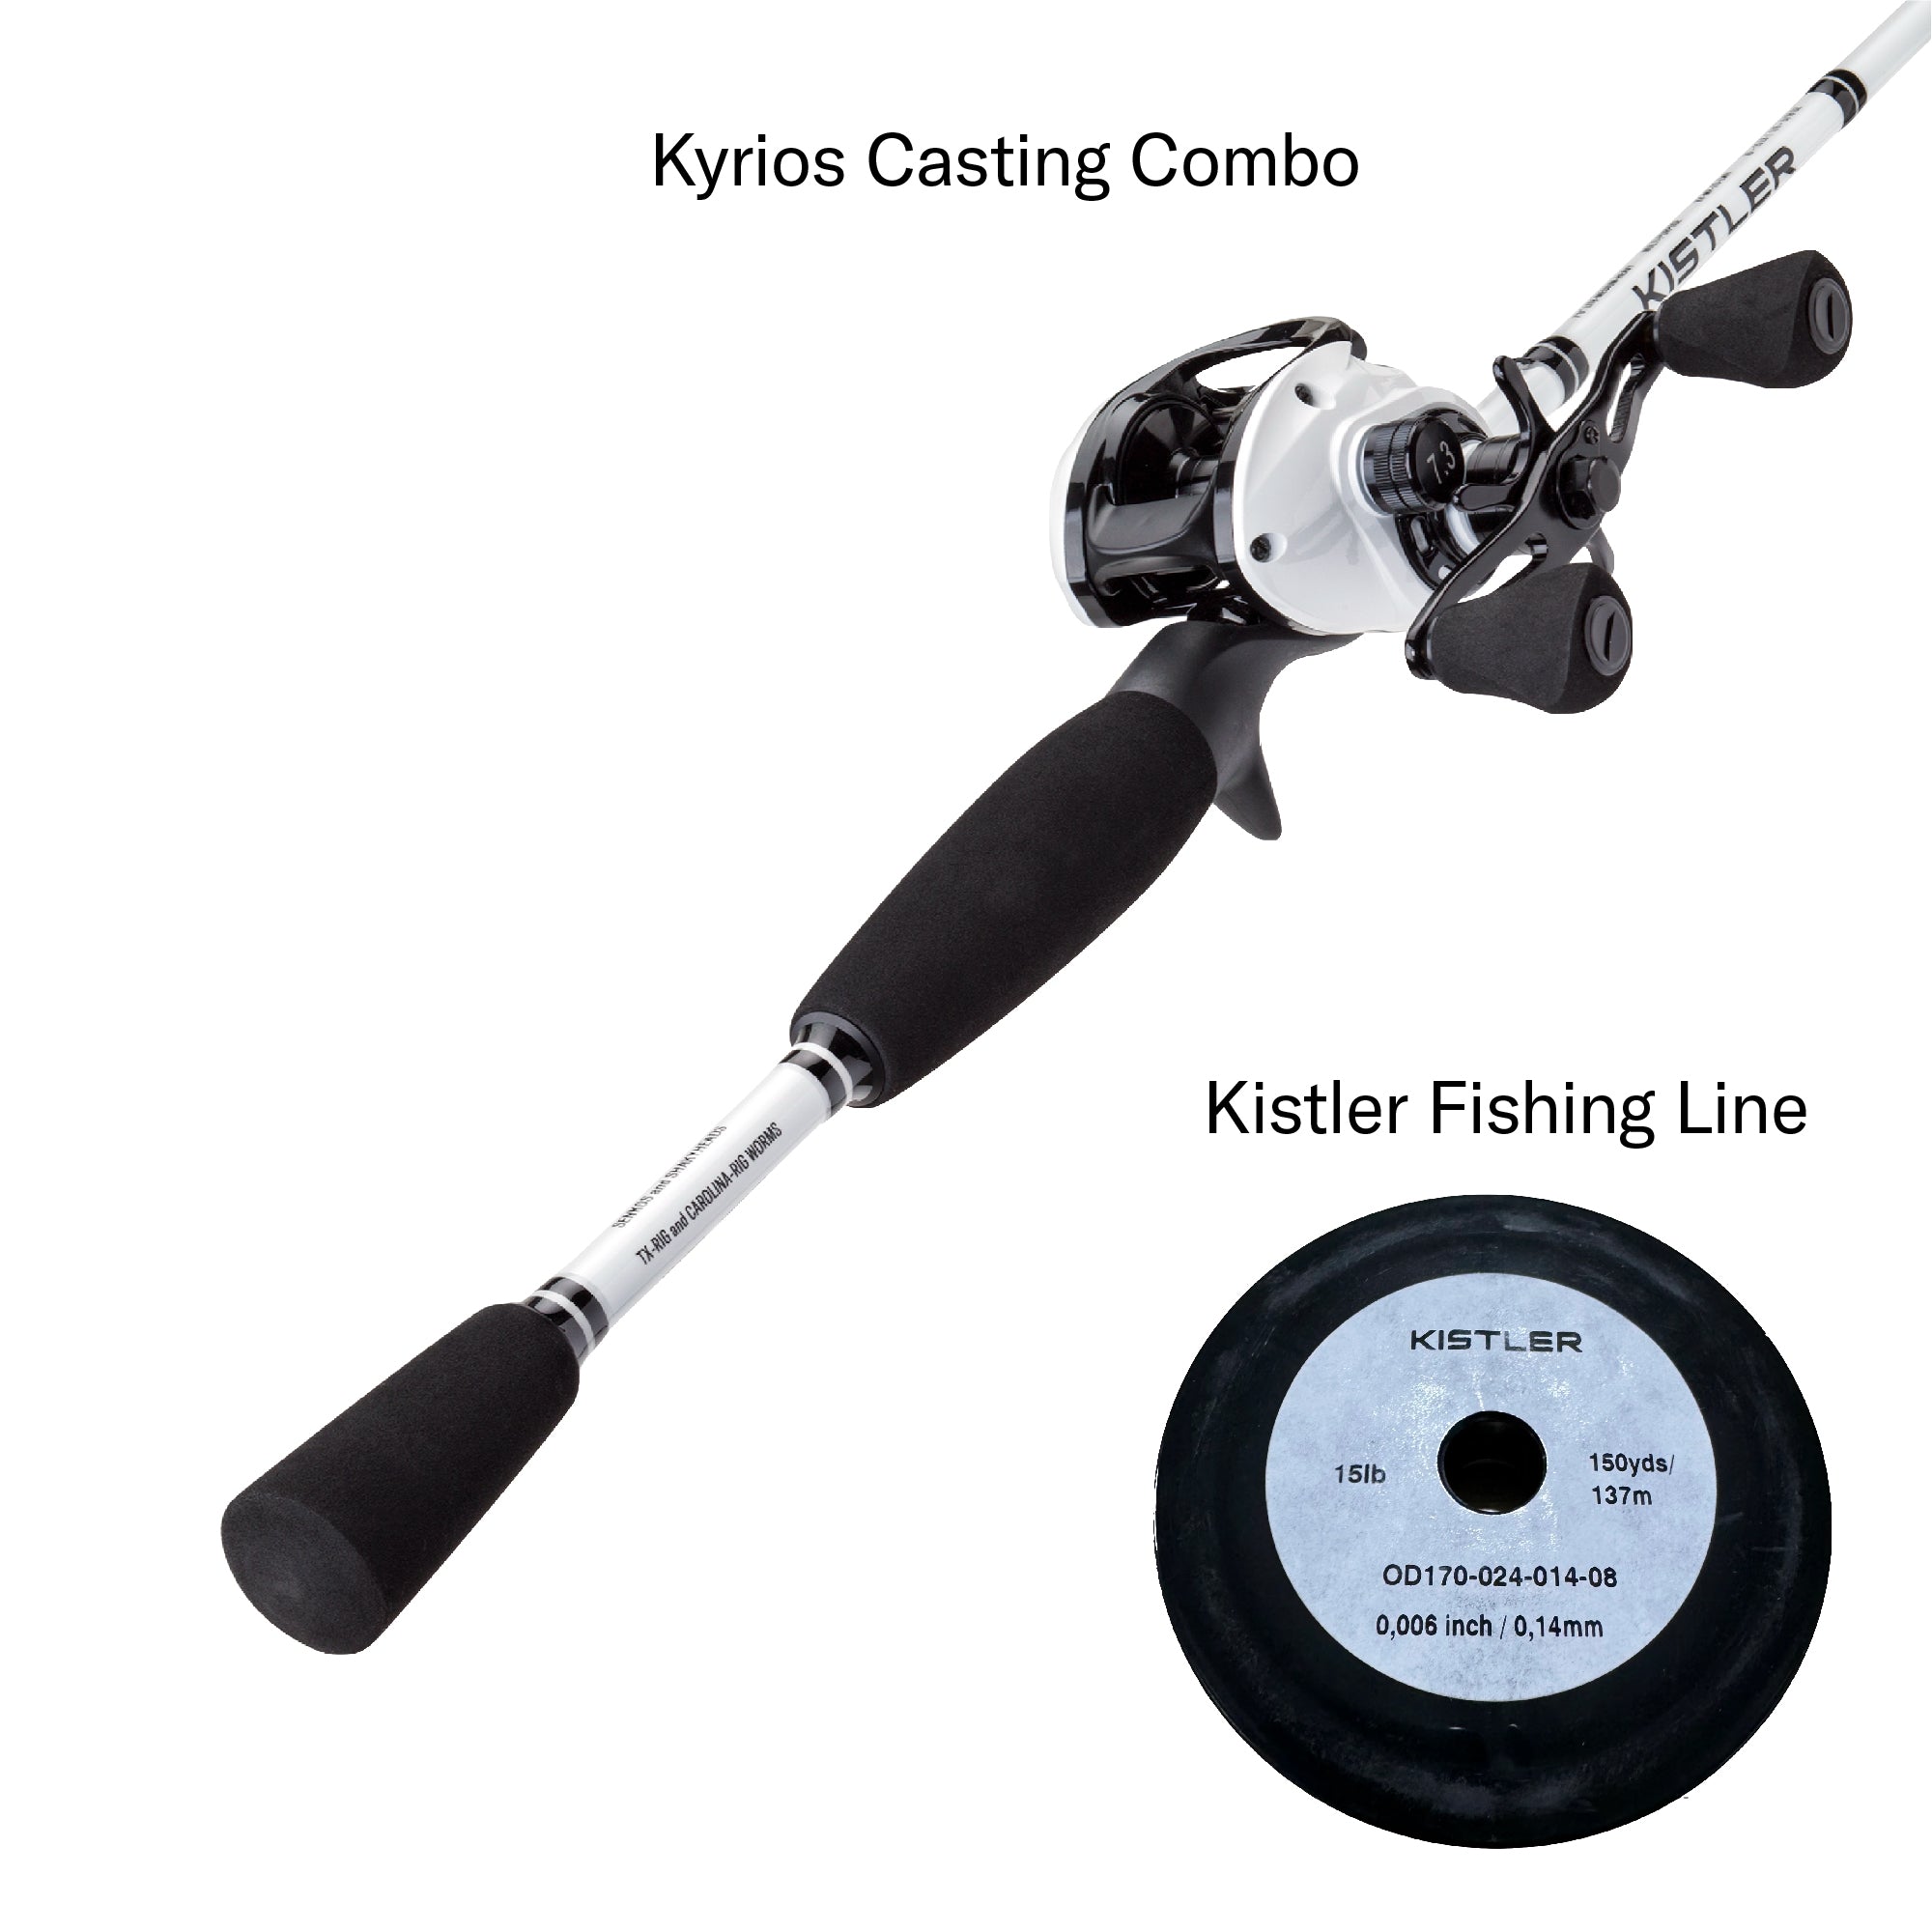 Kyrios Casting Combo and Kistler Line – KISTLER Fishing